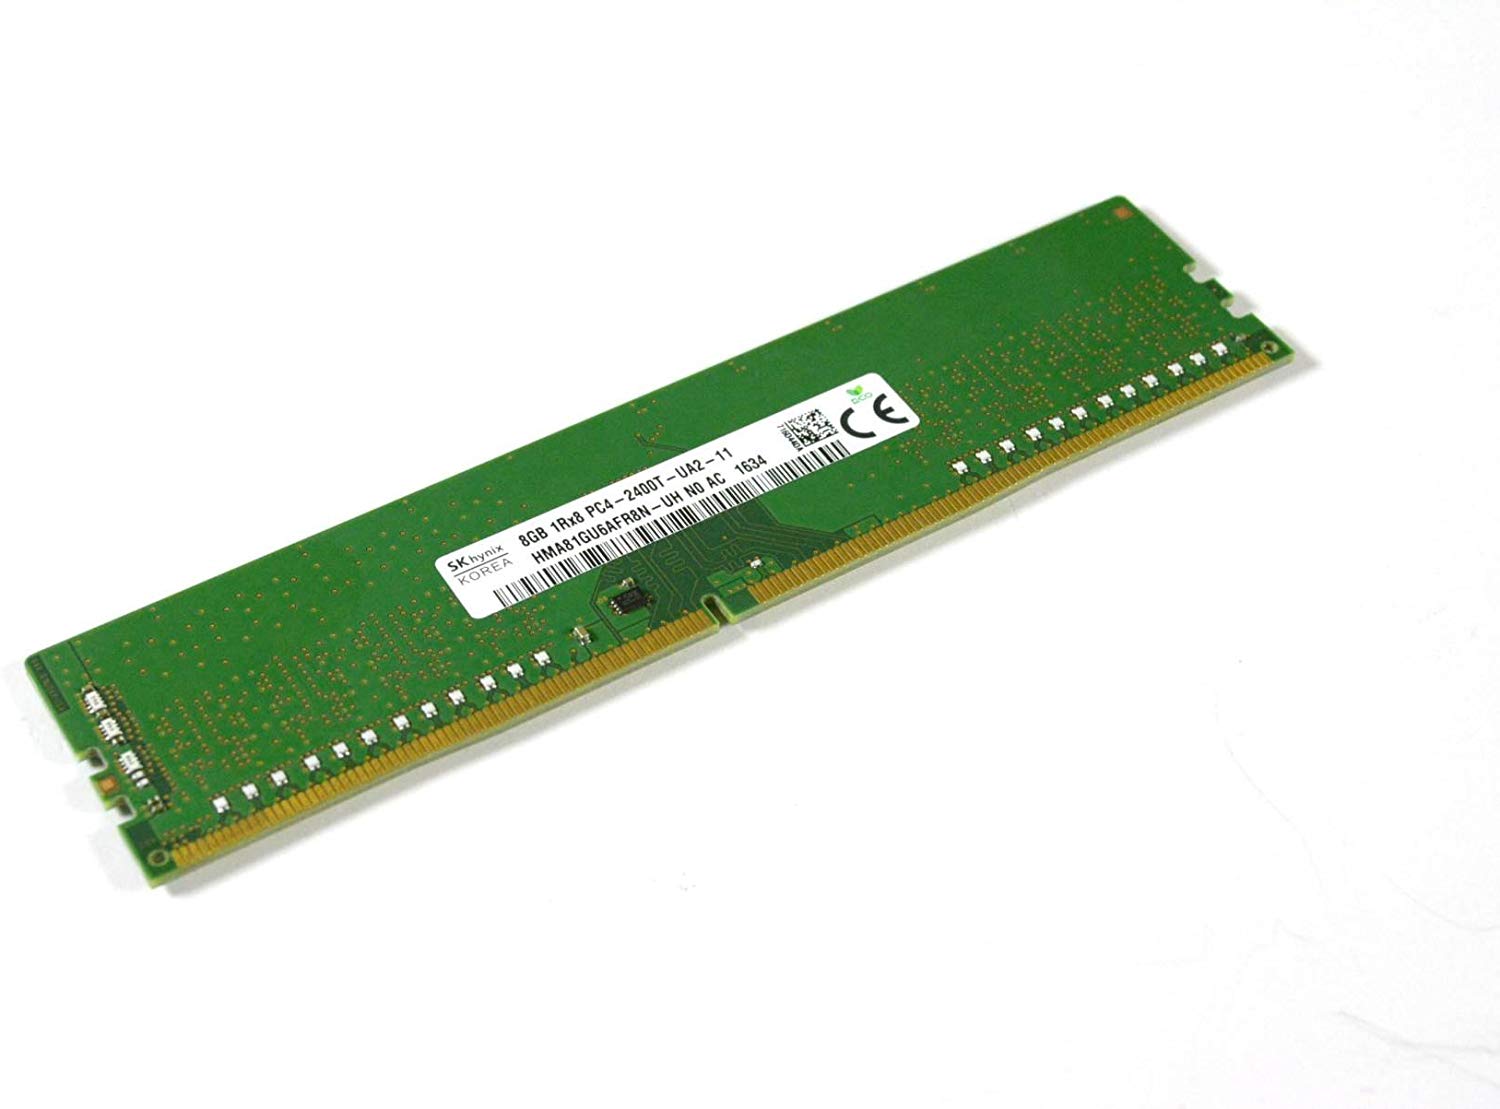 【新品】デスクトップ用メモリ Hynix 8GB pc4-19200 ddr4 PC4-2400T 2400MHz 288pin DIMMメモリモジュールMFR P/N hma81gu6afr8 N-uh 1R×8 非ecc